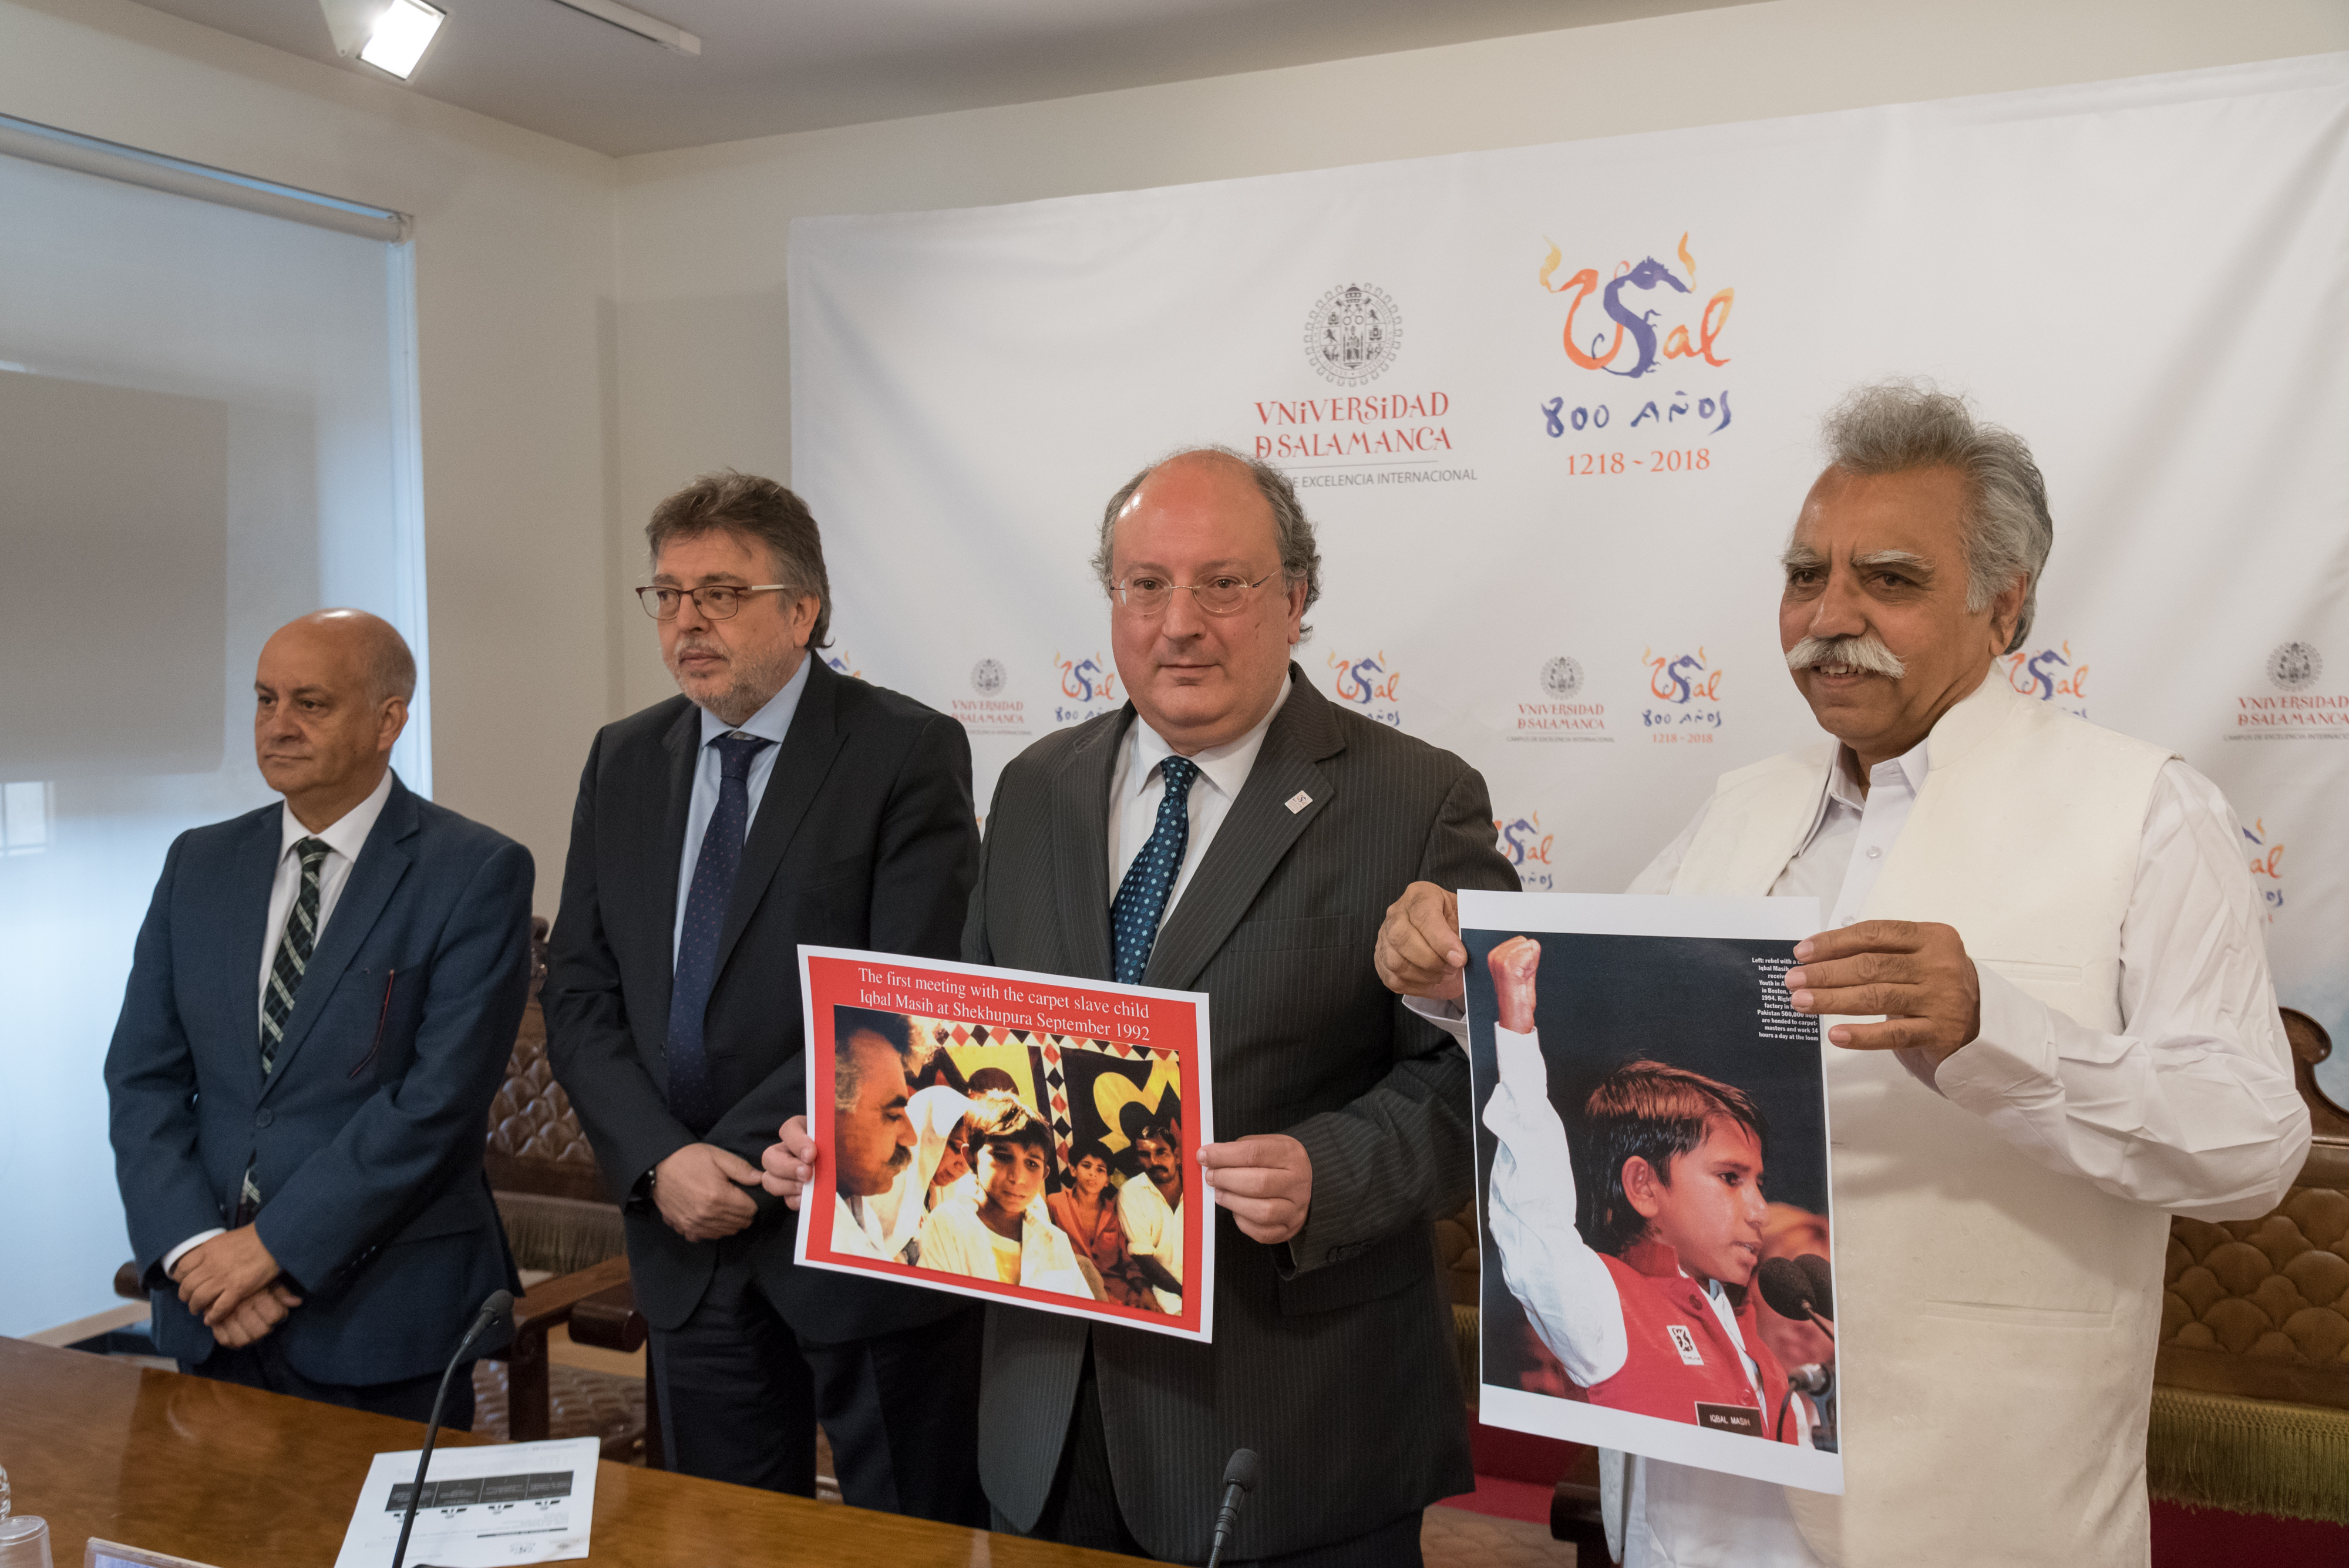 El activista pakistaní Muhammad Ehsan Ullah Khan visita la Universidad de Salamanca con motivo del Día Mundial contra la Esclavitud Infantil